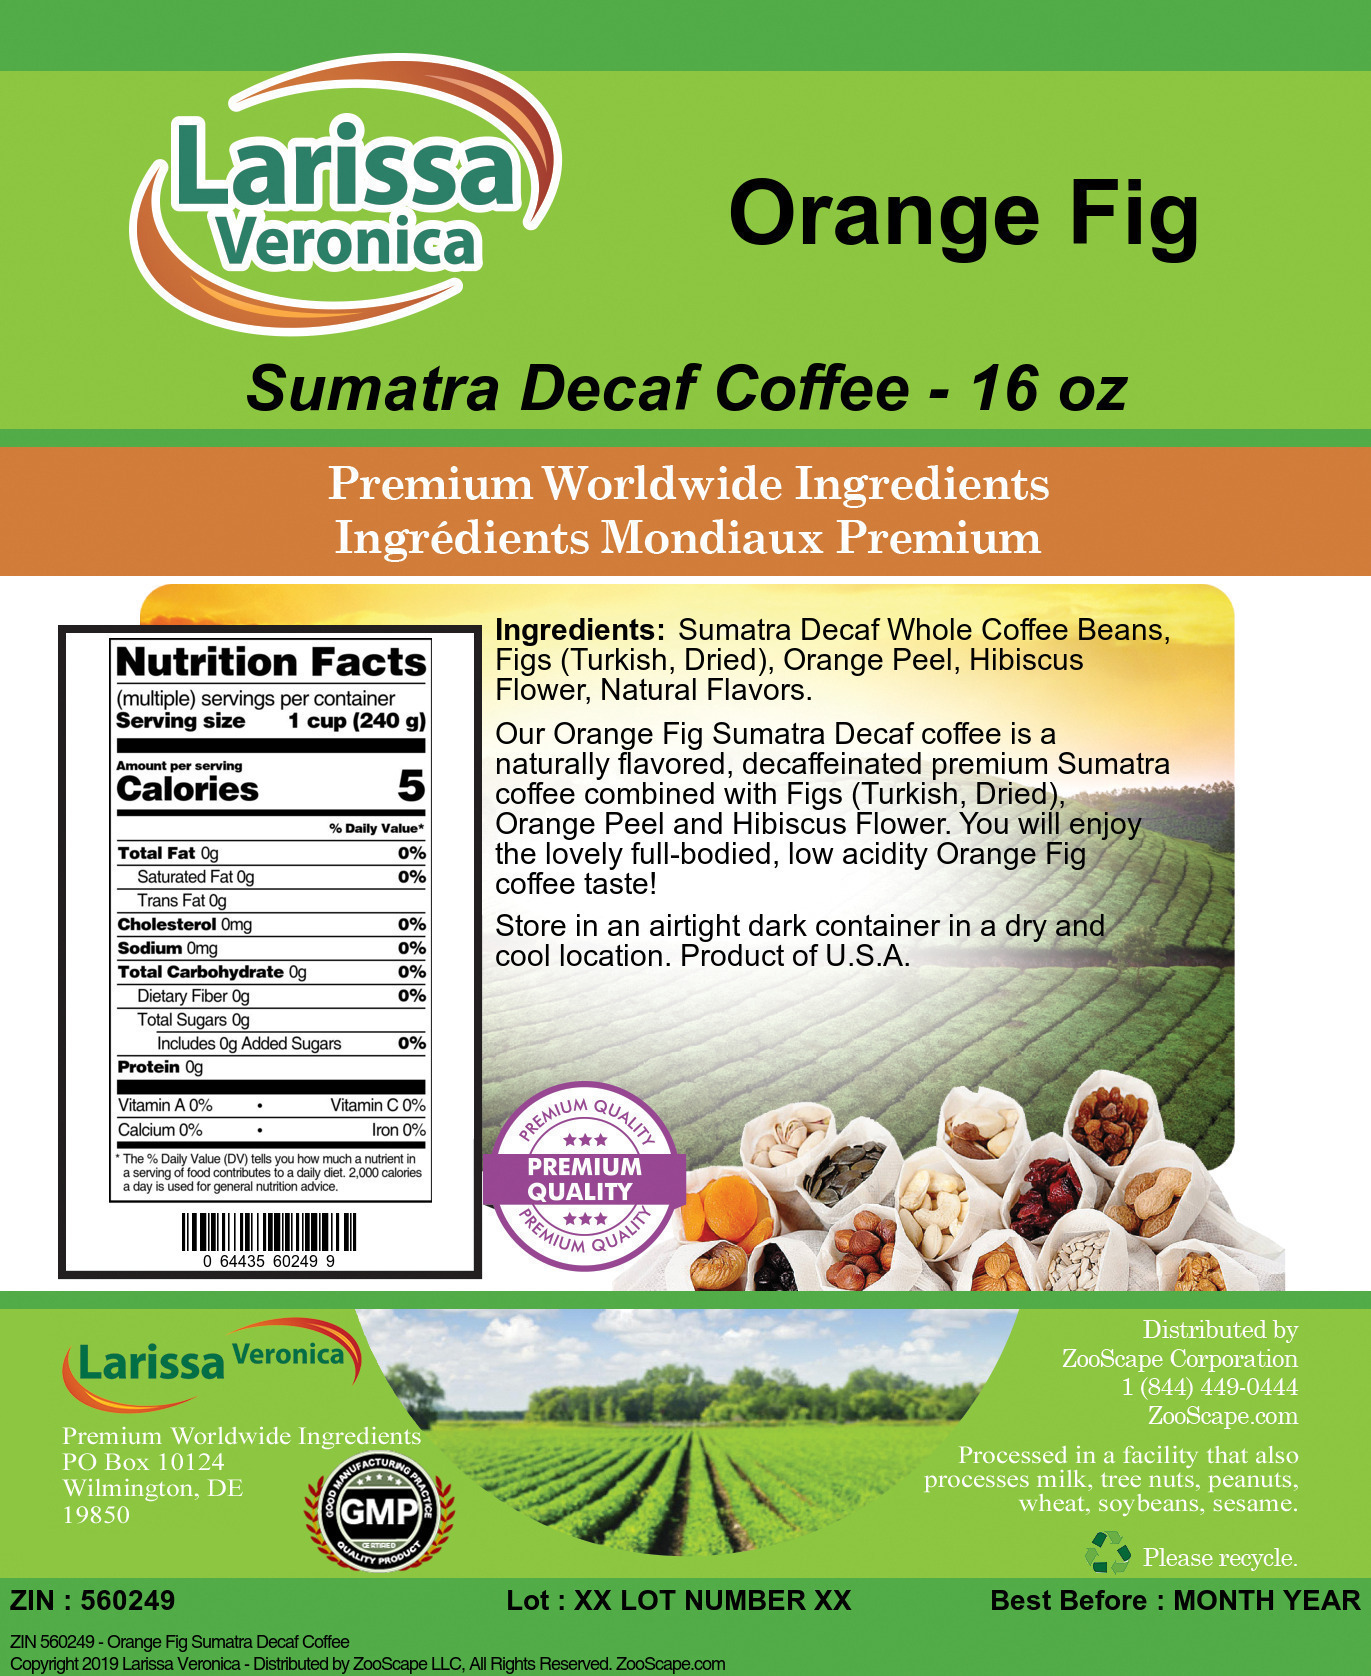 Orange Fig Sumatra Decaf Coffee - Label